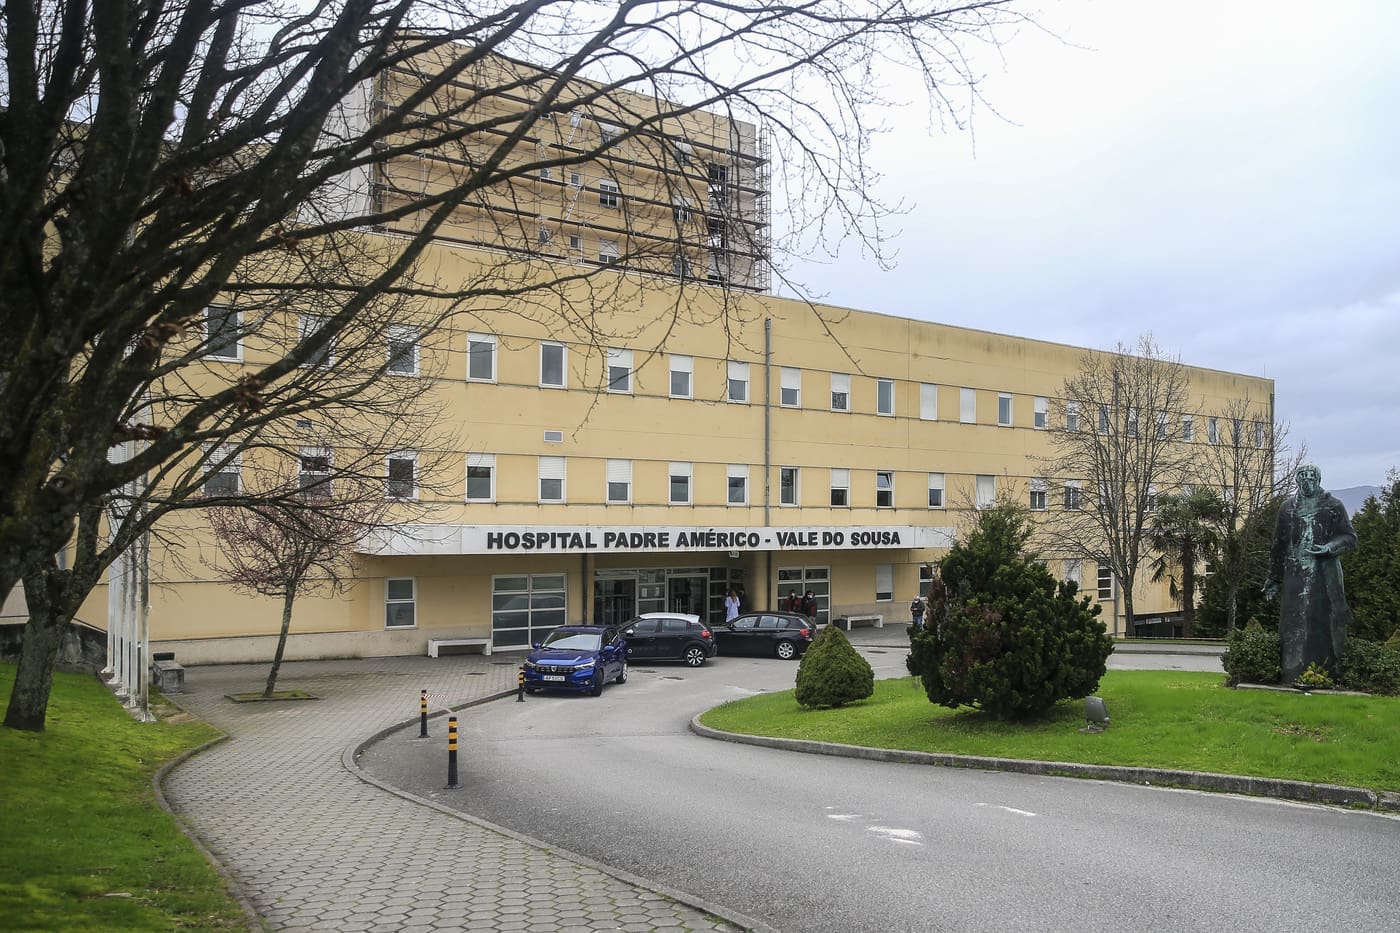 Utentes internados em psiquiatria no hospital de Penafiel vão ser transferidos